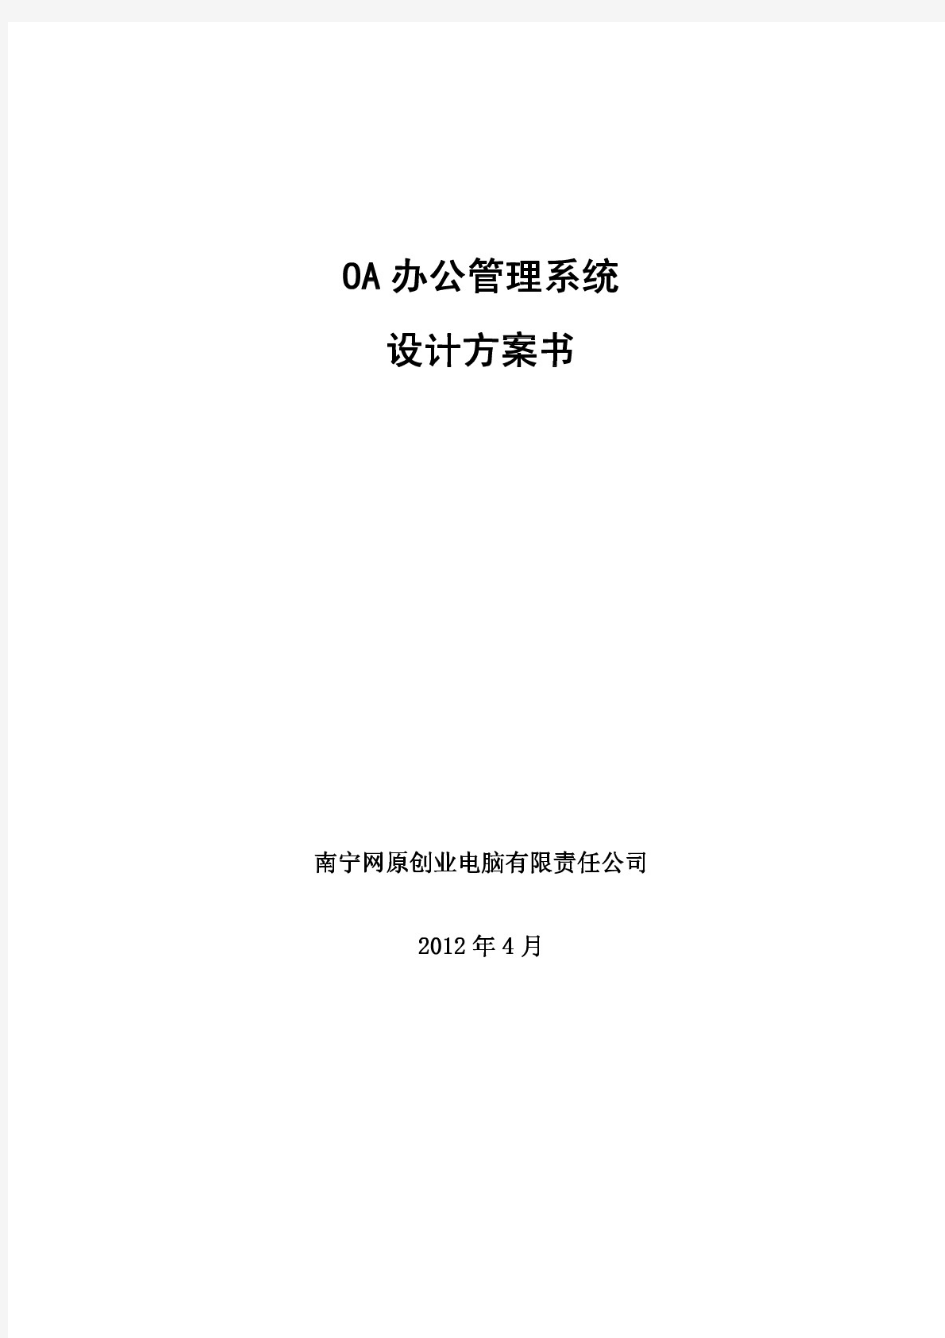 企业OA办公管理系统方案书.